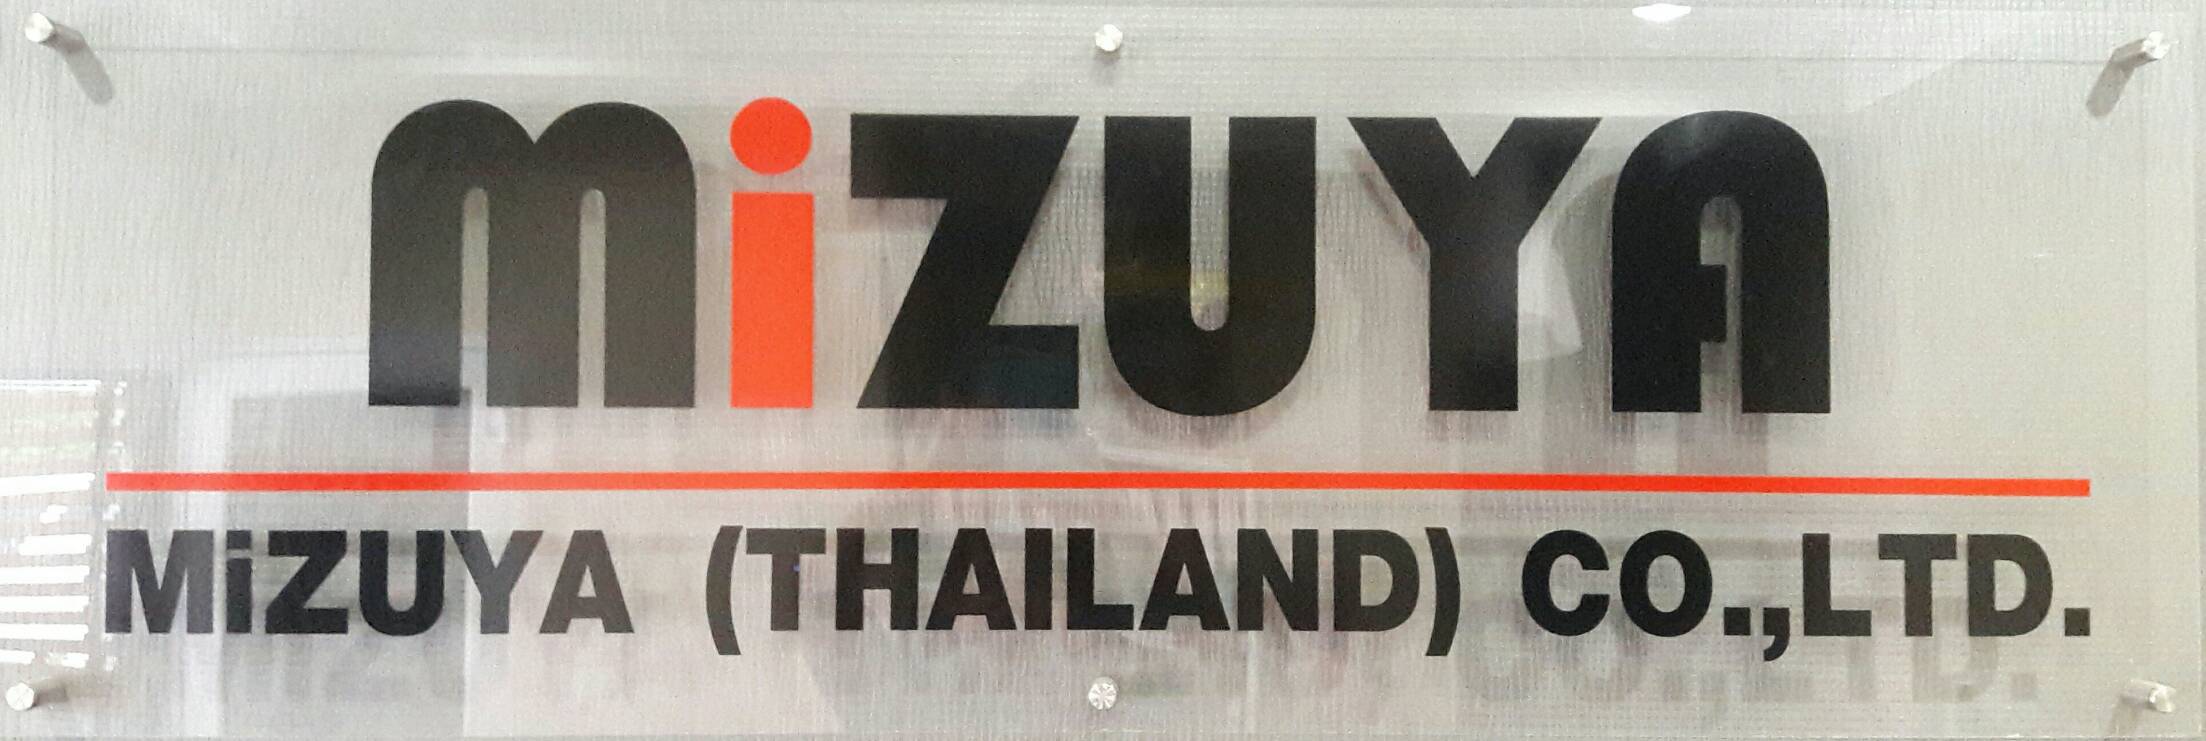 MIZUYA(THAILAND)CO.,LTD. logo โลโก้